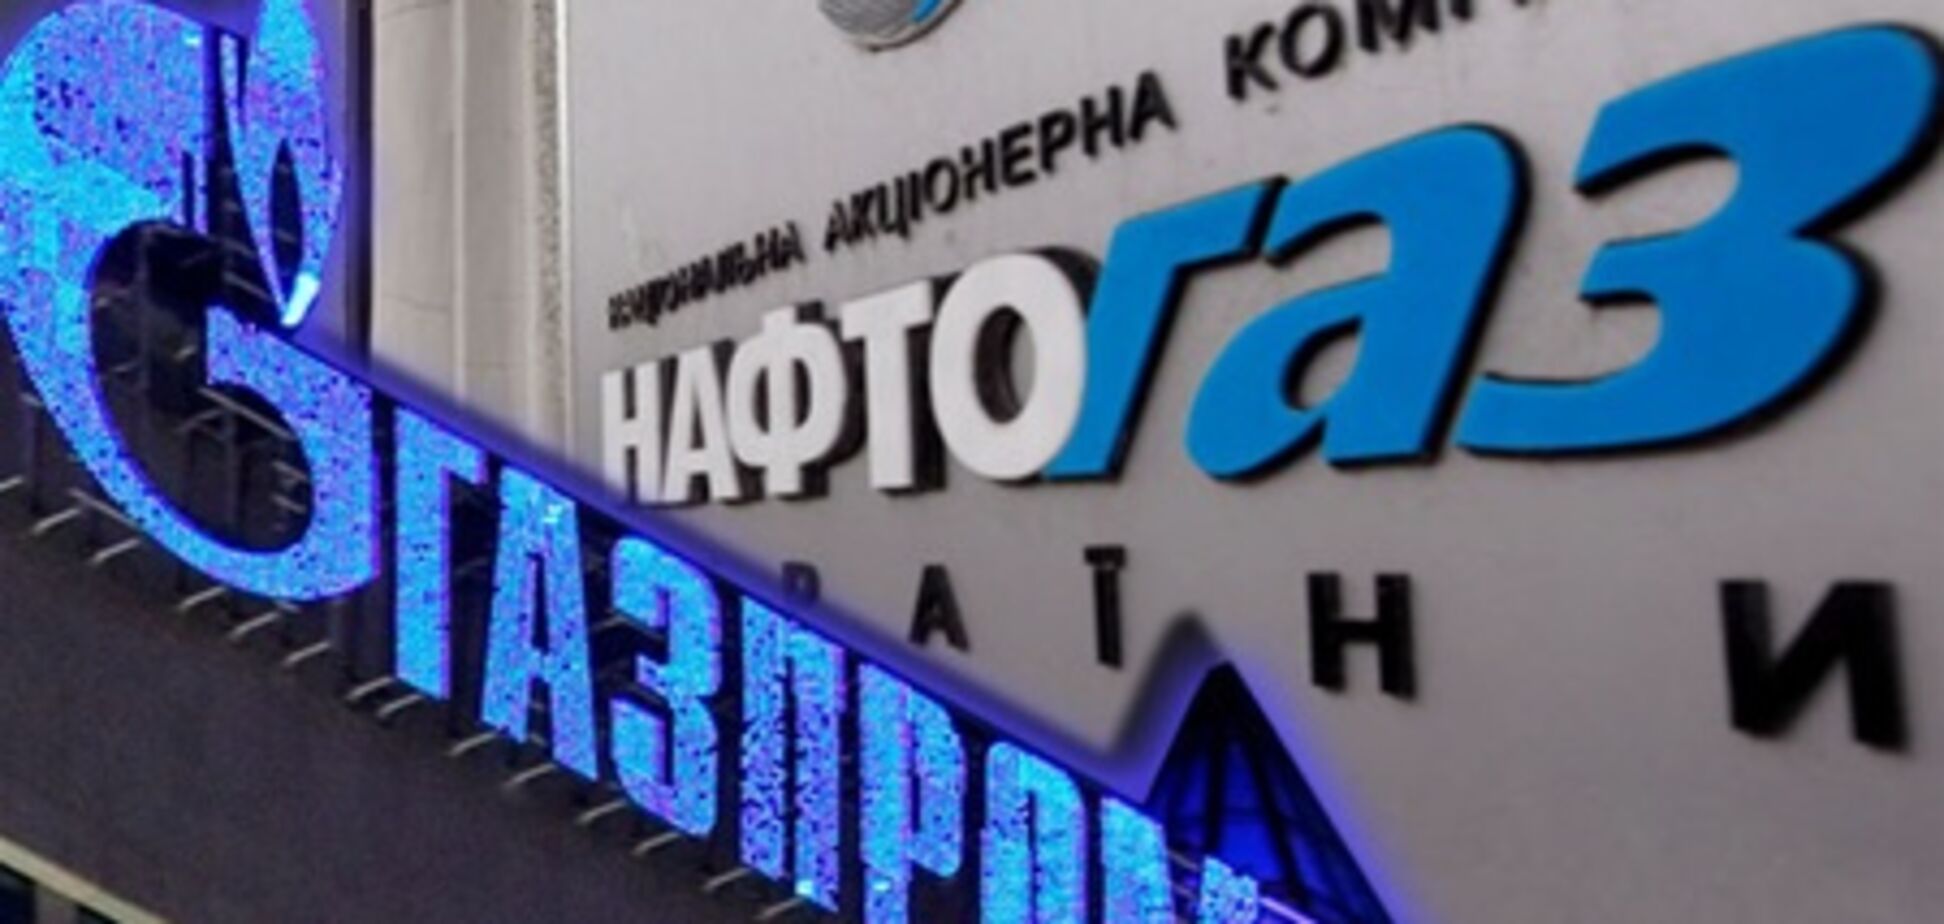 Миллер требует слияния Газпрома и Нафтогаза в обмен на скидки